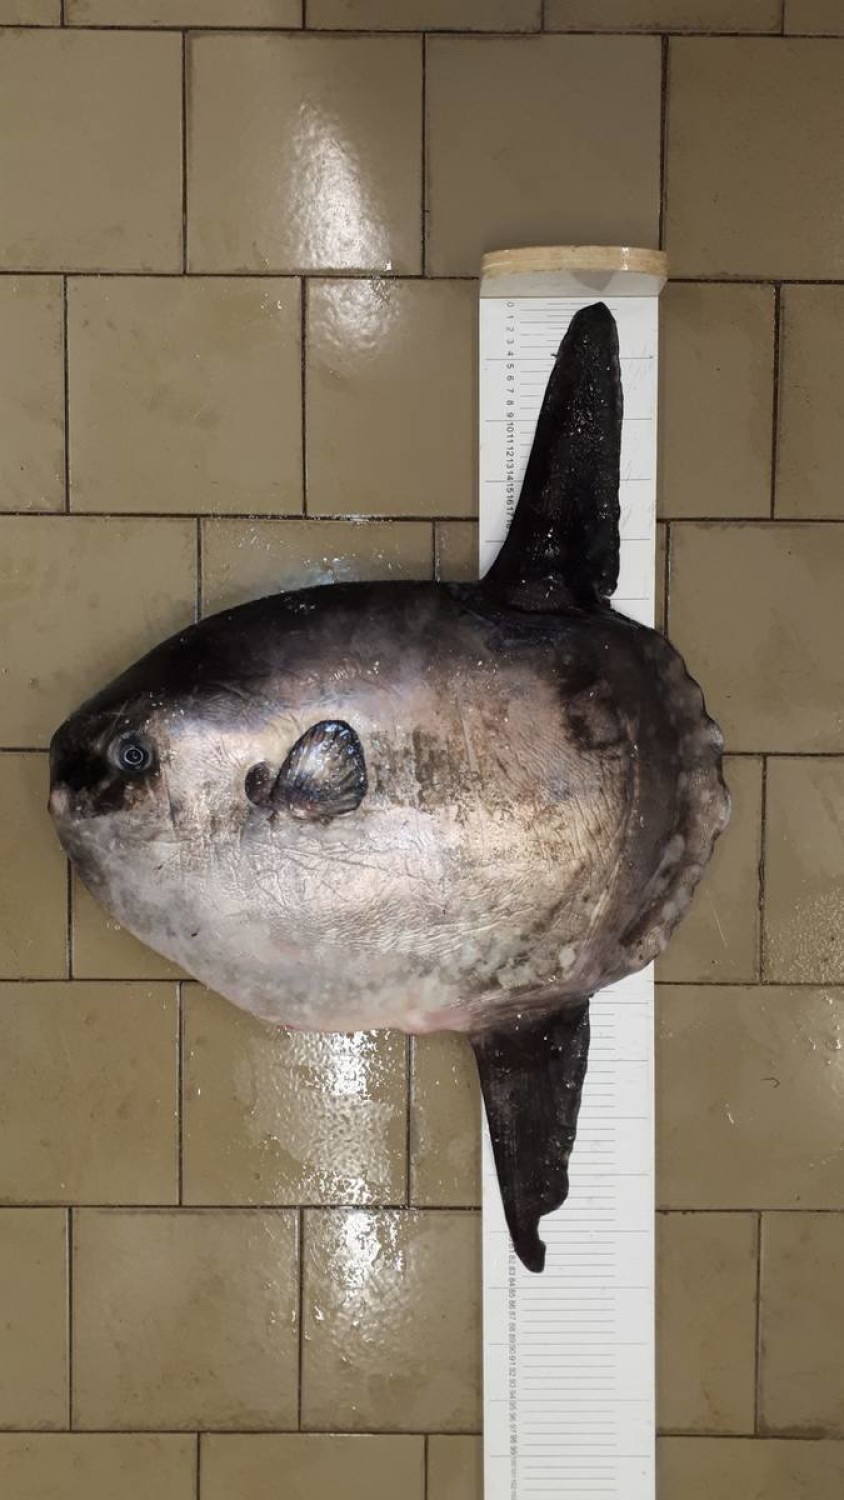 Samogłów, mola mola - egzotyczna ryba przypłynęła z Bałtyku